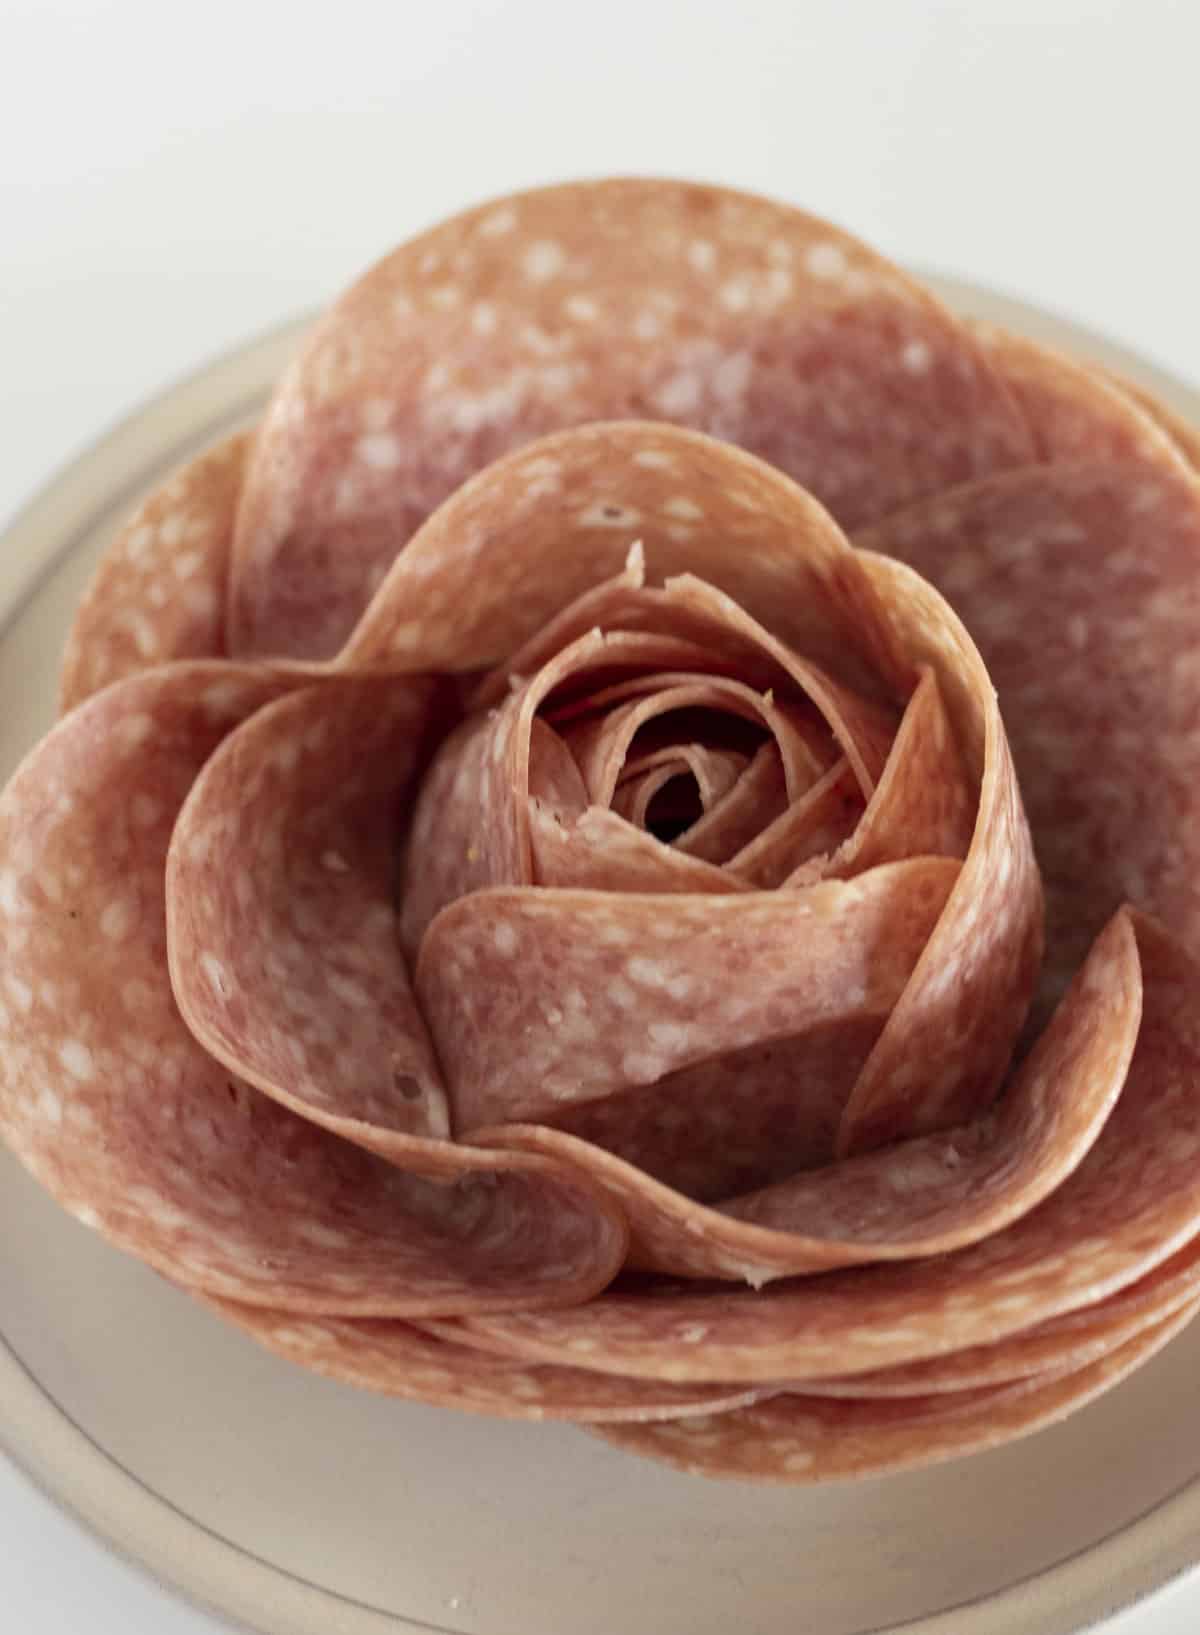 A close up of a large salami rose.